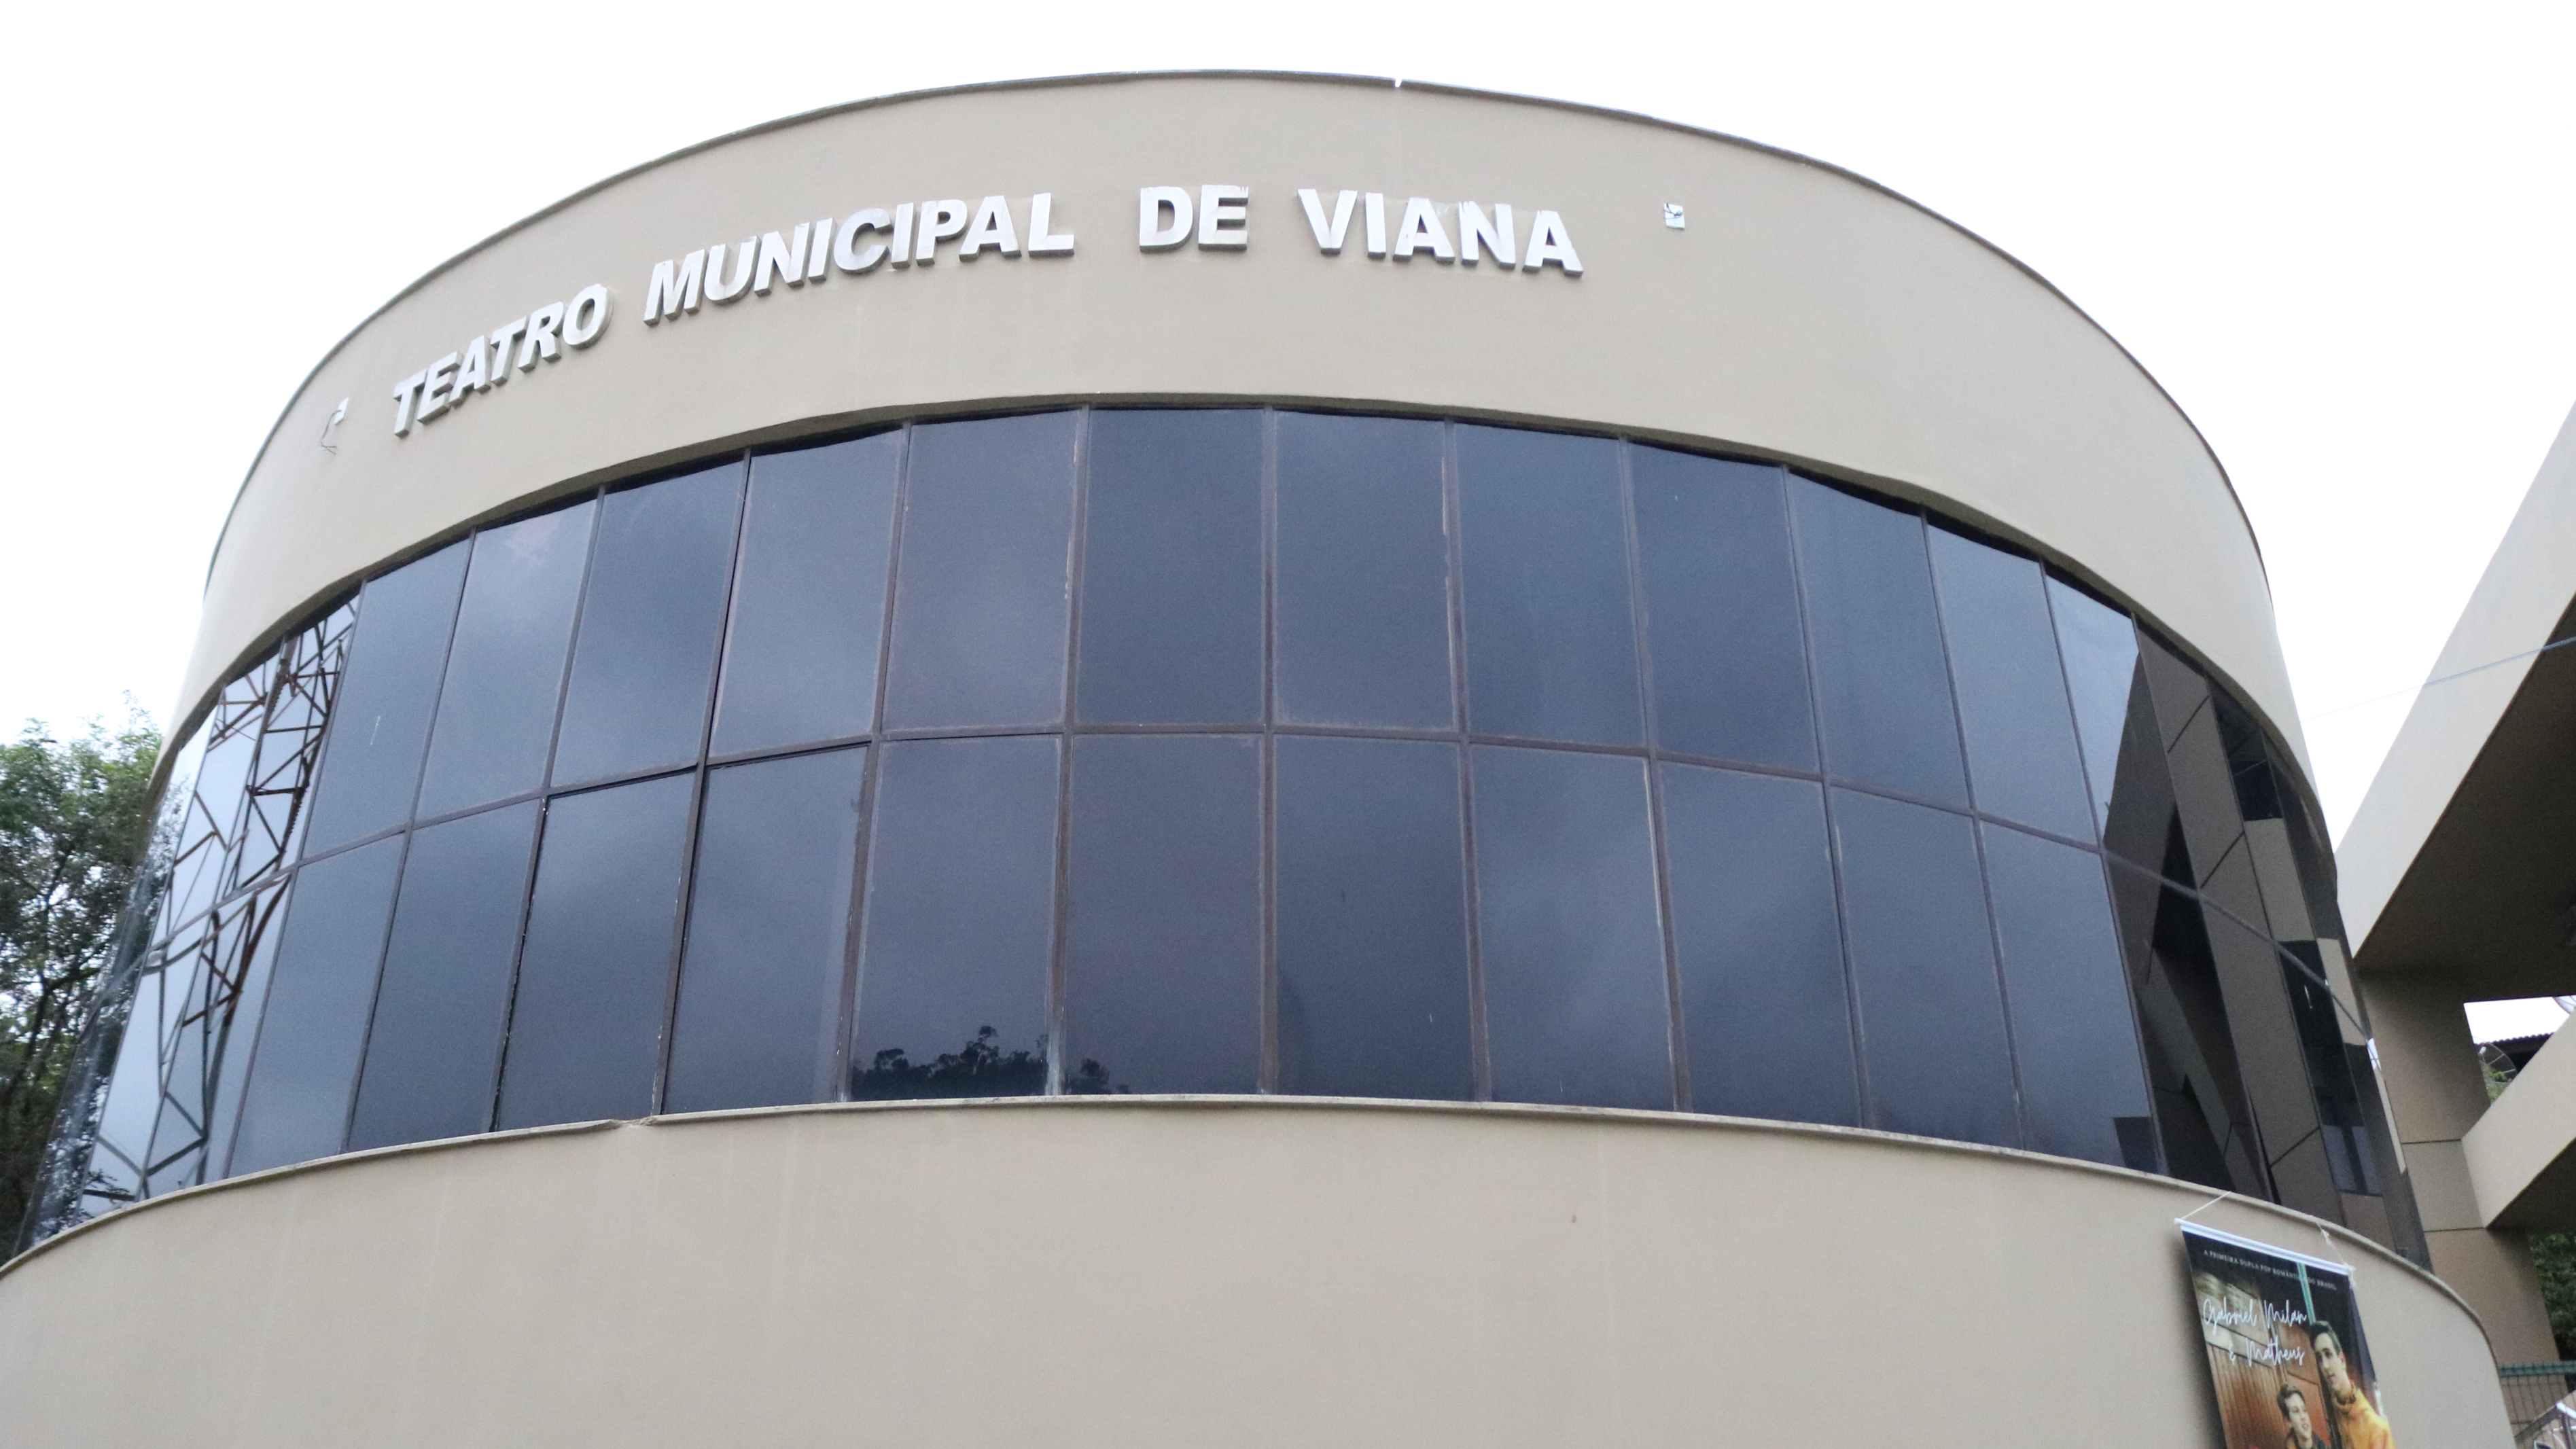  Prefeitura de Viana convida a população a participar de Audiência Pública de apresentação de Plano Plurianual - PPA